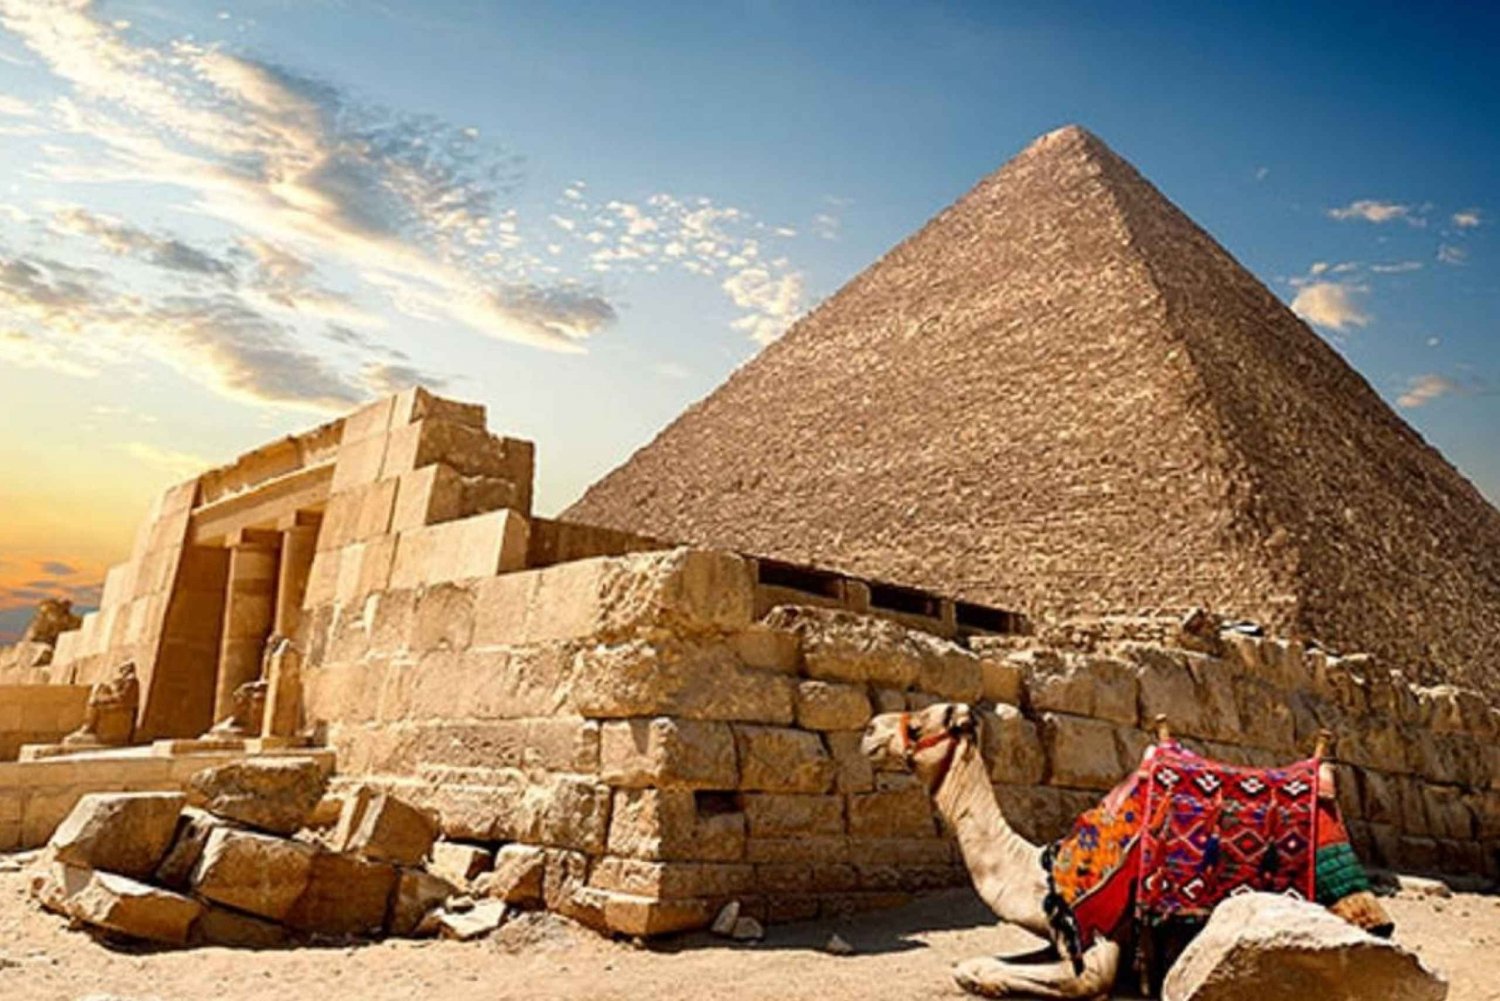 Kair: Pakiet podróżniczy do Egiptu na 4 dni i 3 noce